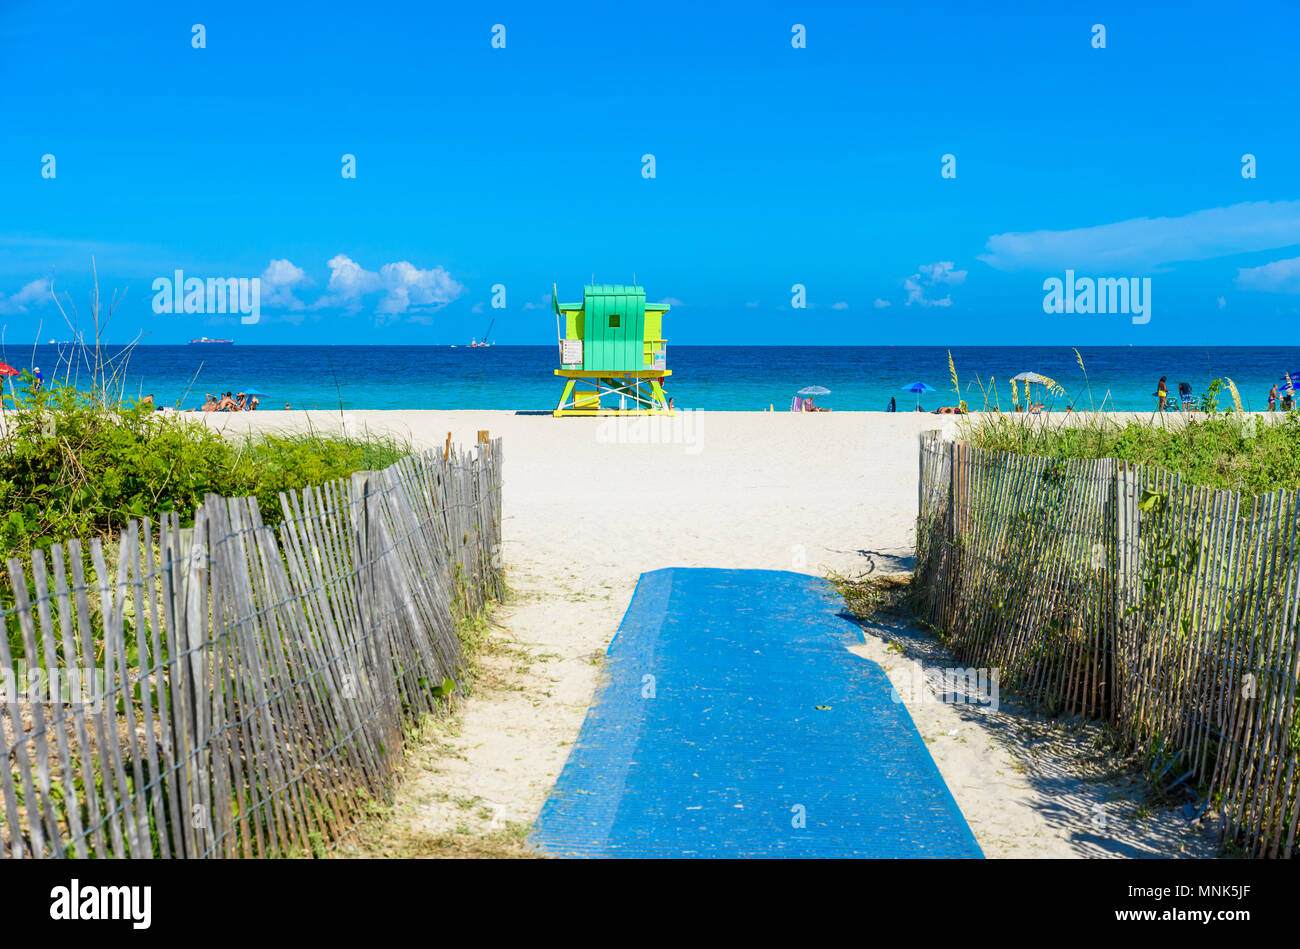 Miami South Beach, lifeguard chambre dans un décor de style Art Déco au jour d'été ensoleillé avec la mer des Caraïbes en arrière-plan, célèbre lieu de voyage Banque D'Images